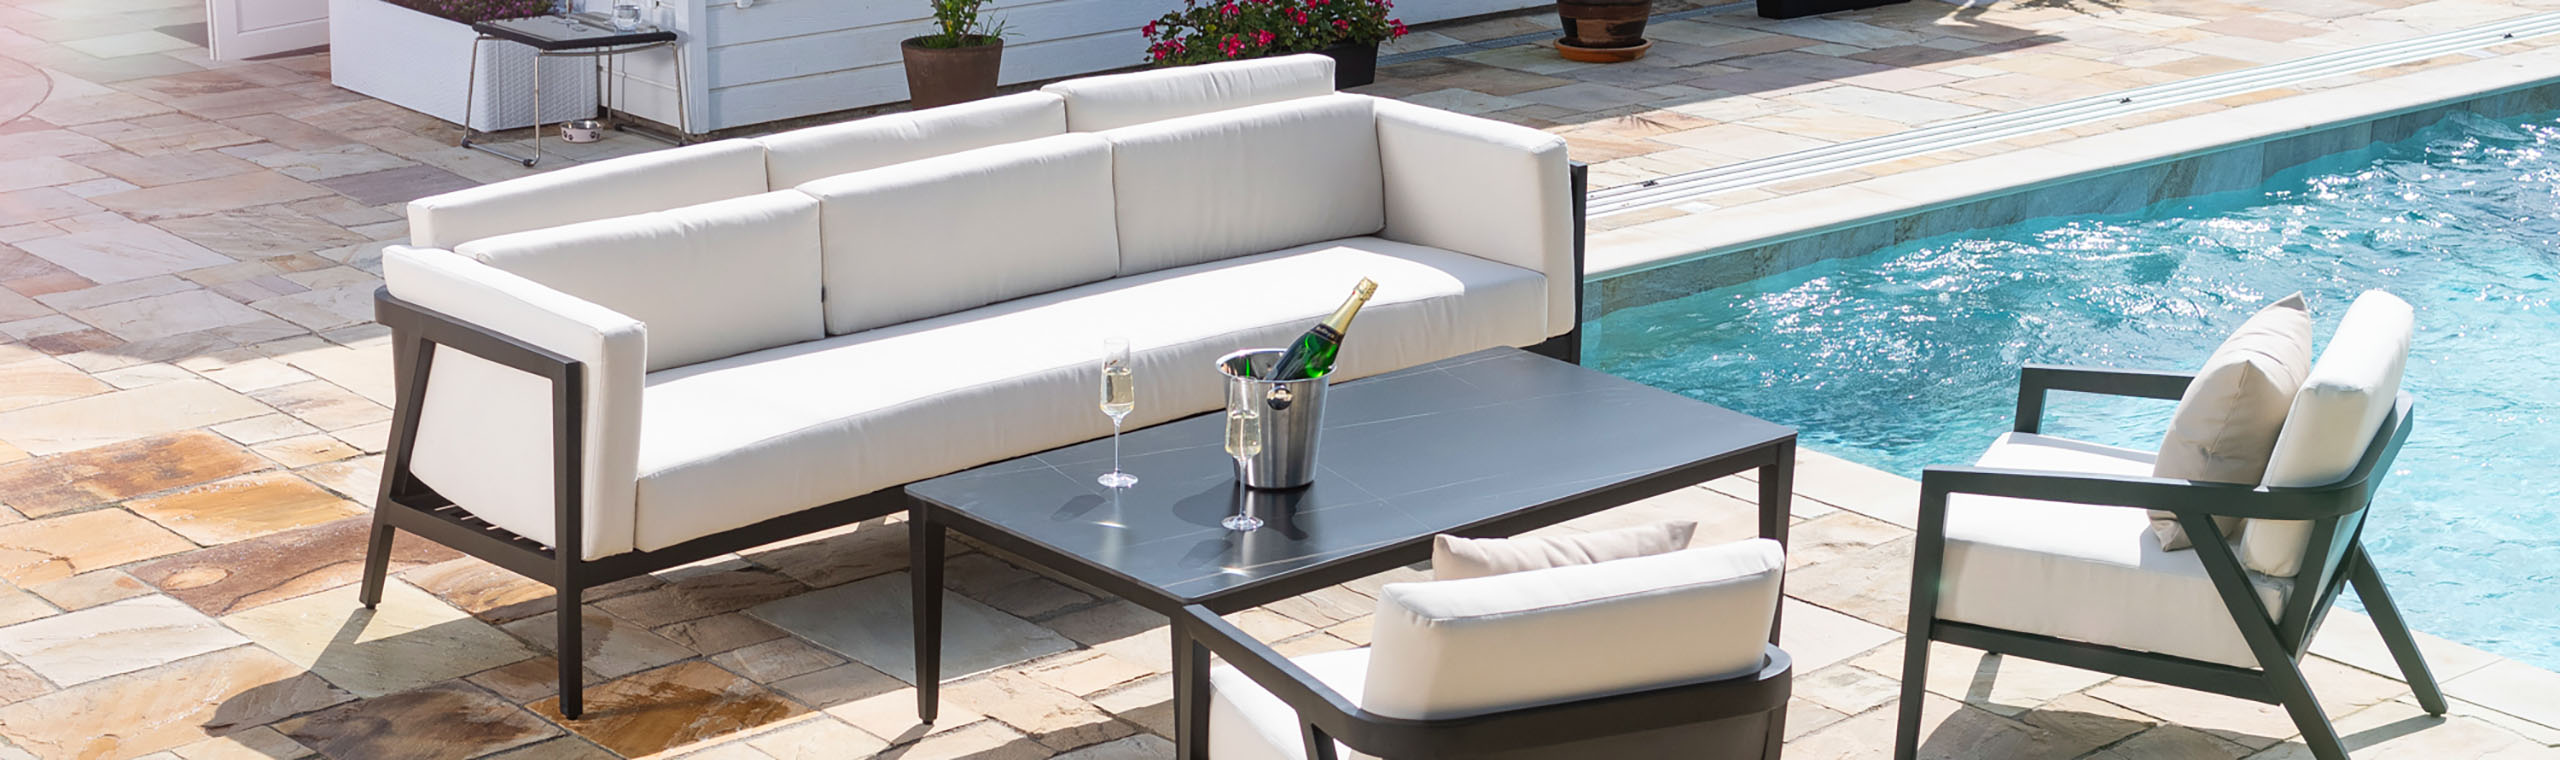 Exklusiv modern loungegrupp i svart aluminium för 5 personer vid pool i modellen Monte Carlo